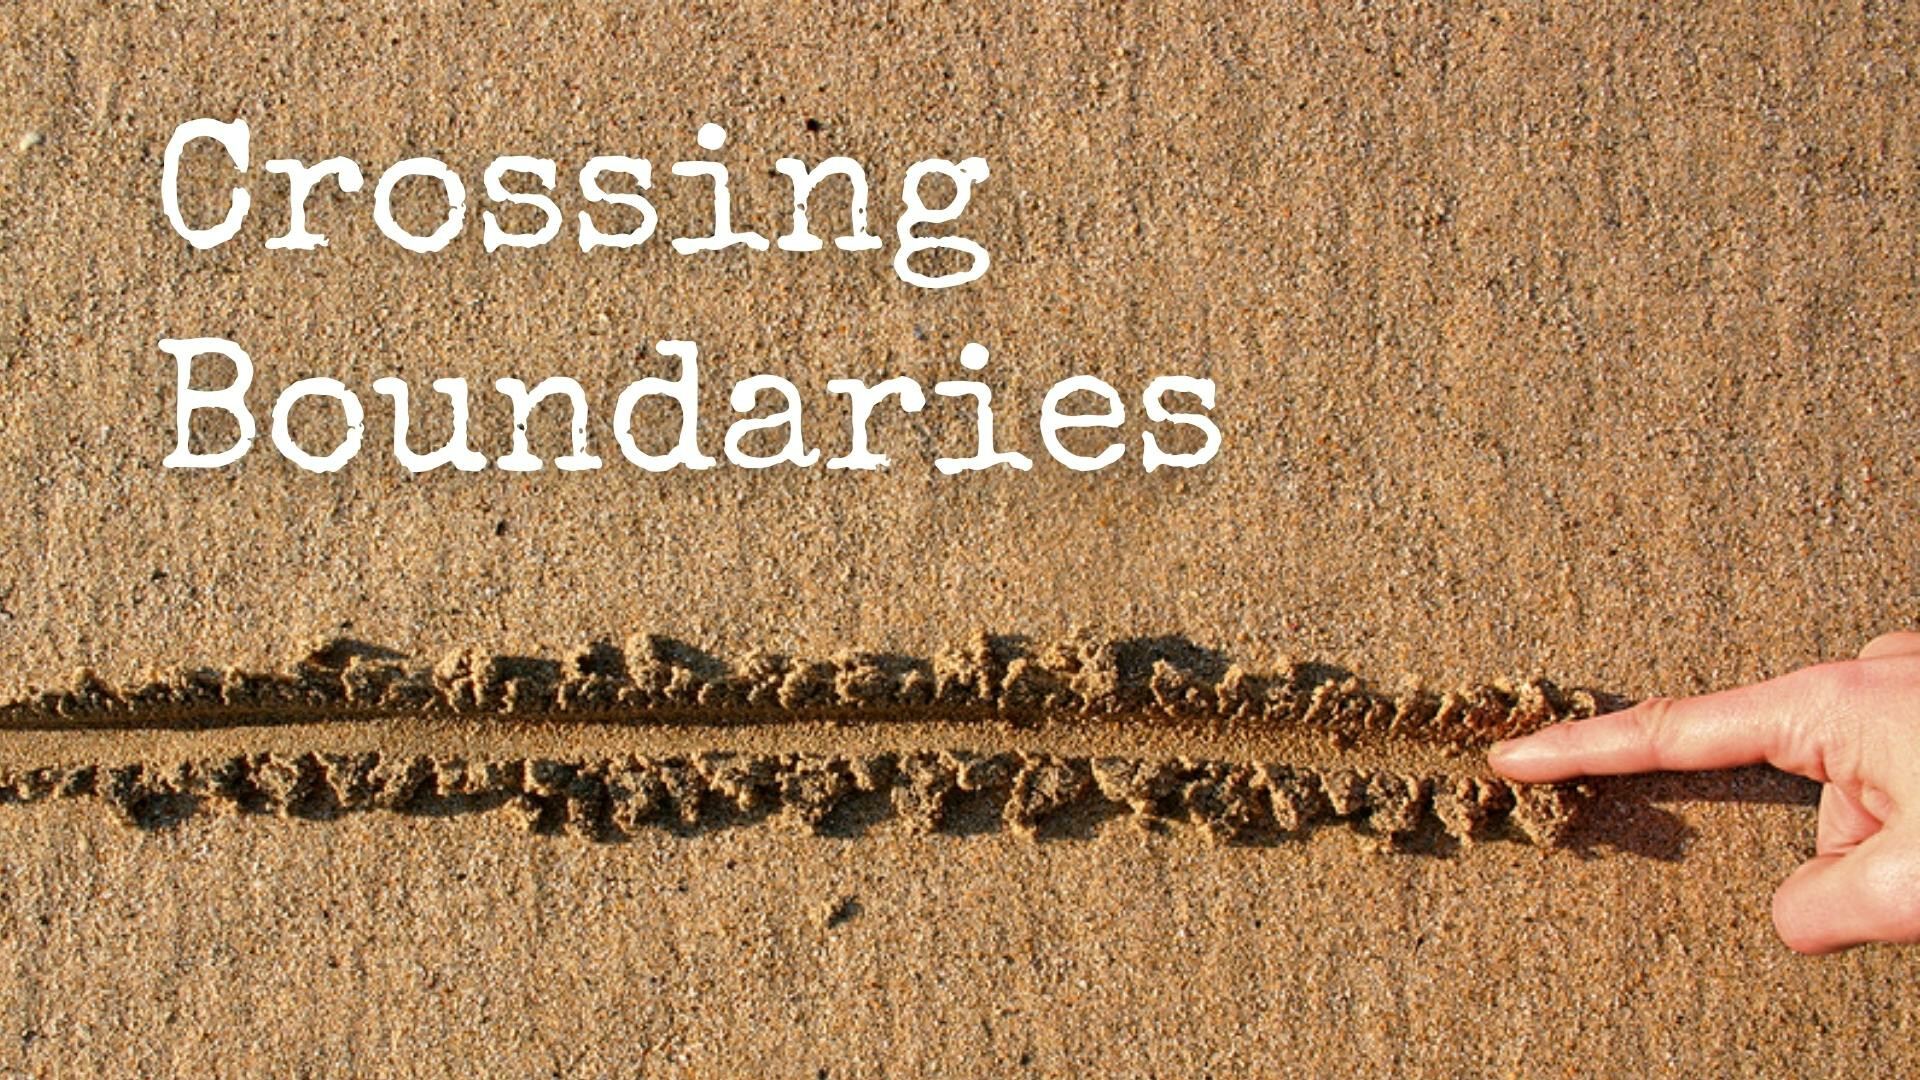 Crossing Boundaries, Children's Message